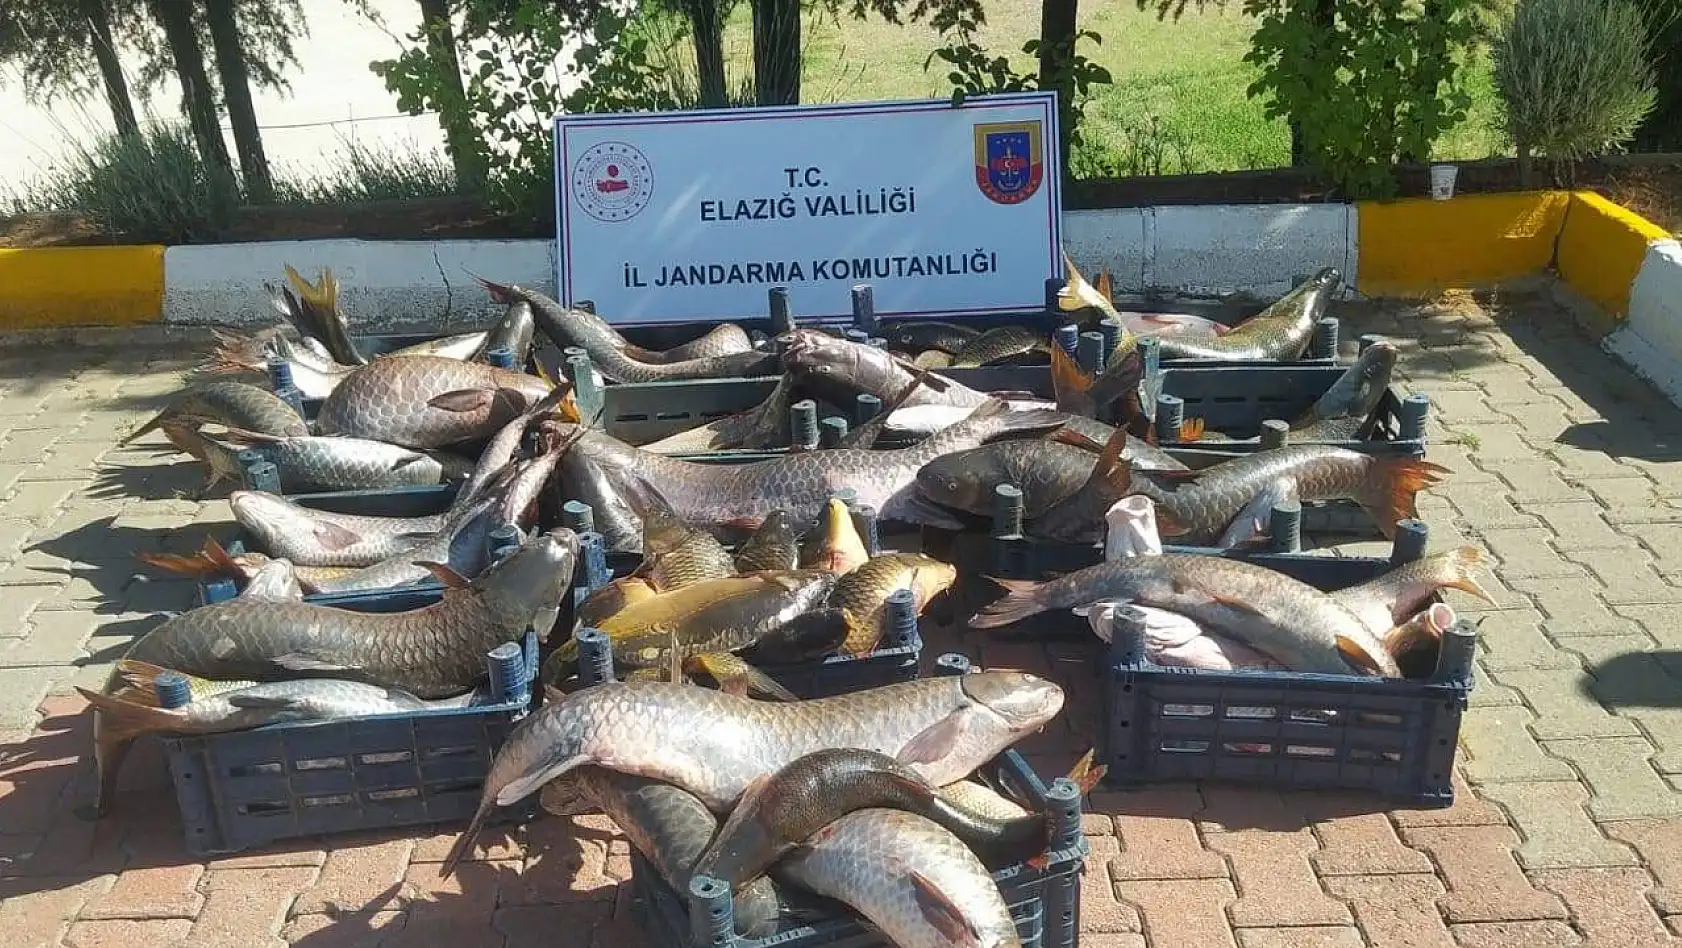 Elazığ'da 6,5 Ton Kaçak Avlanmış Balık Ele Geçirildi